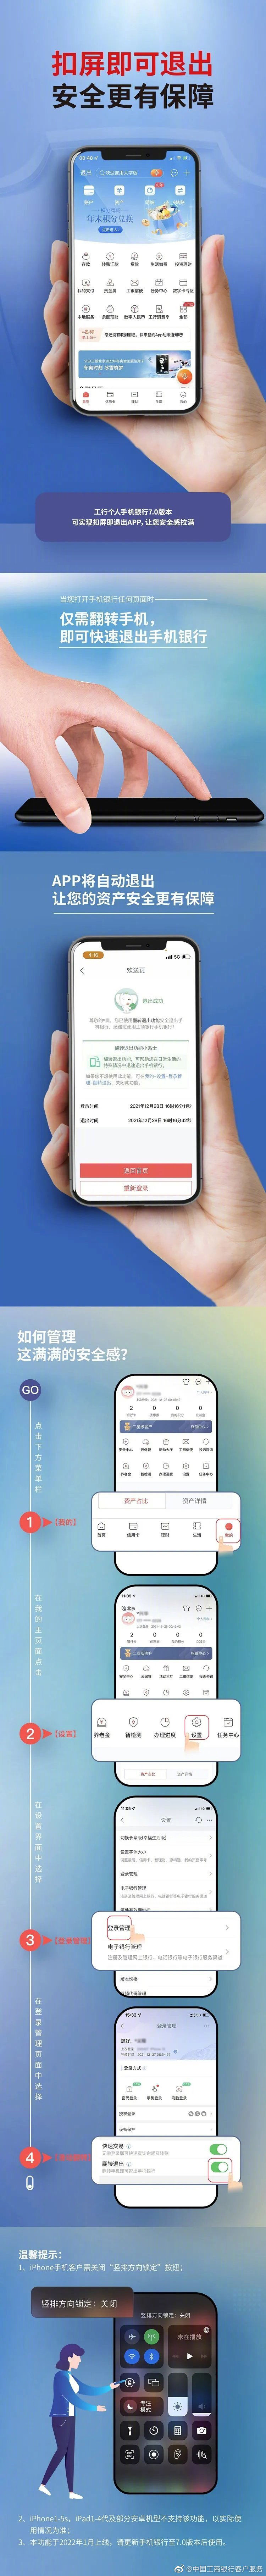 1-4|中国工商银行手机银行推出新功能：翻转手机即可自动退出 App